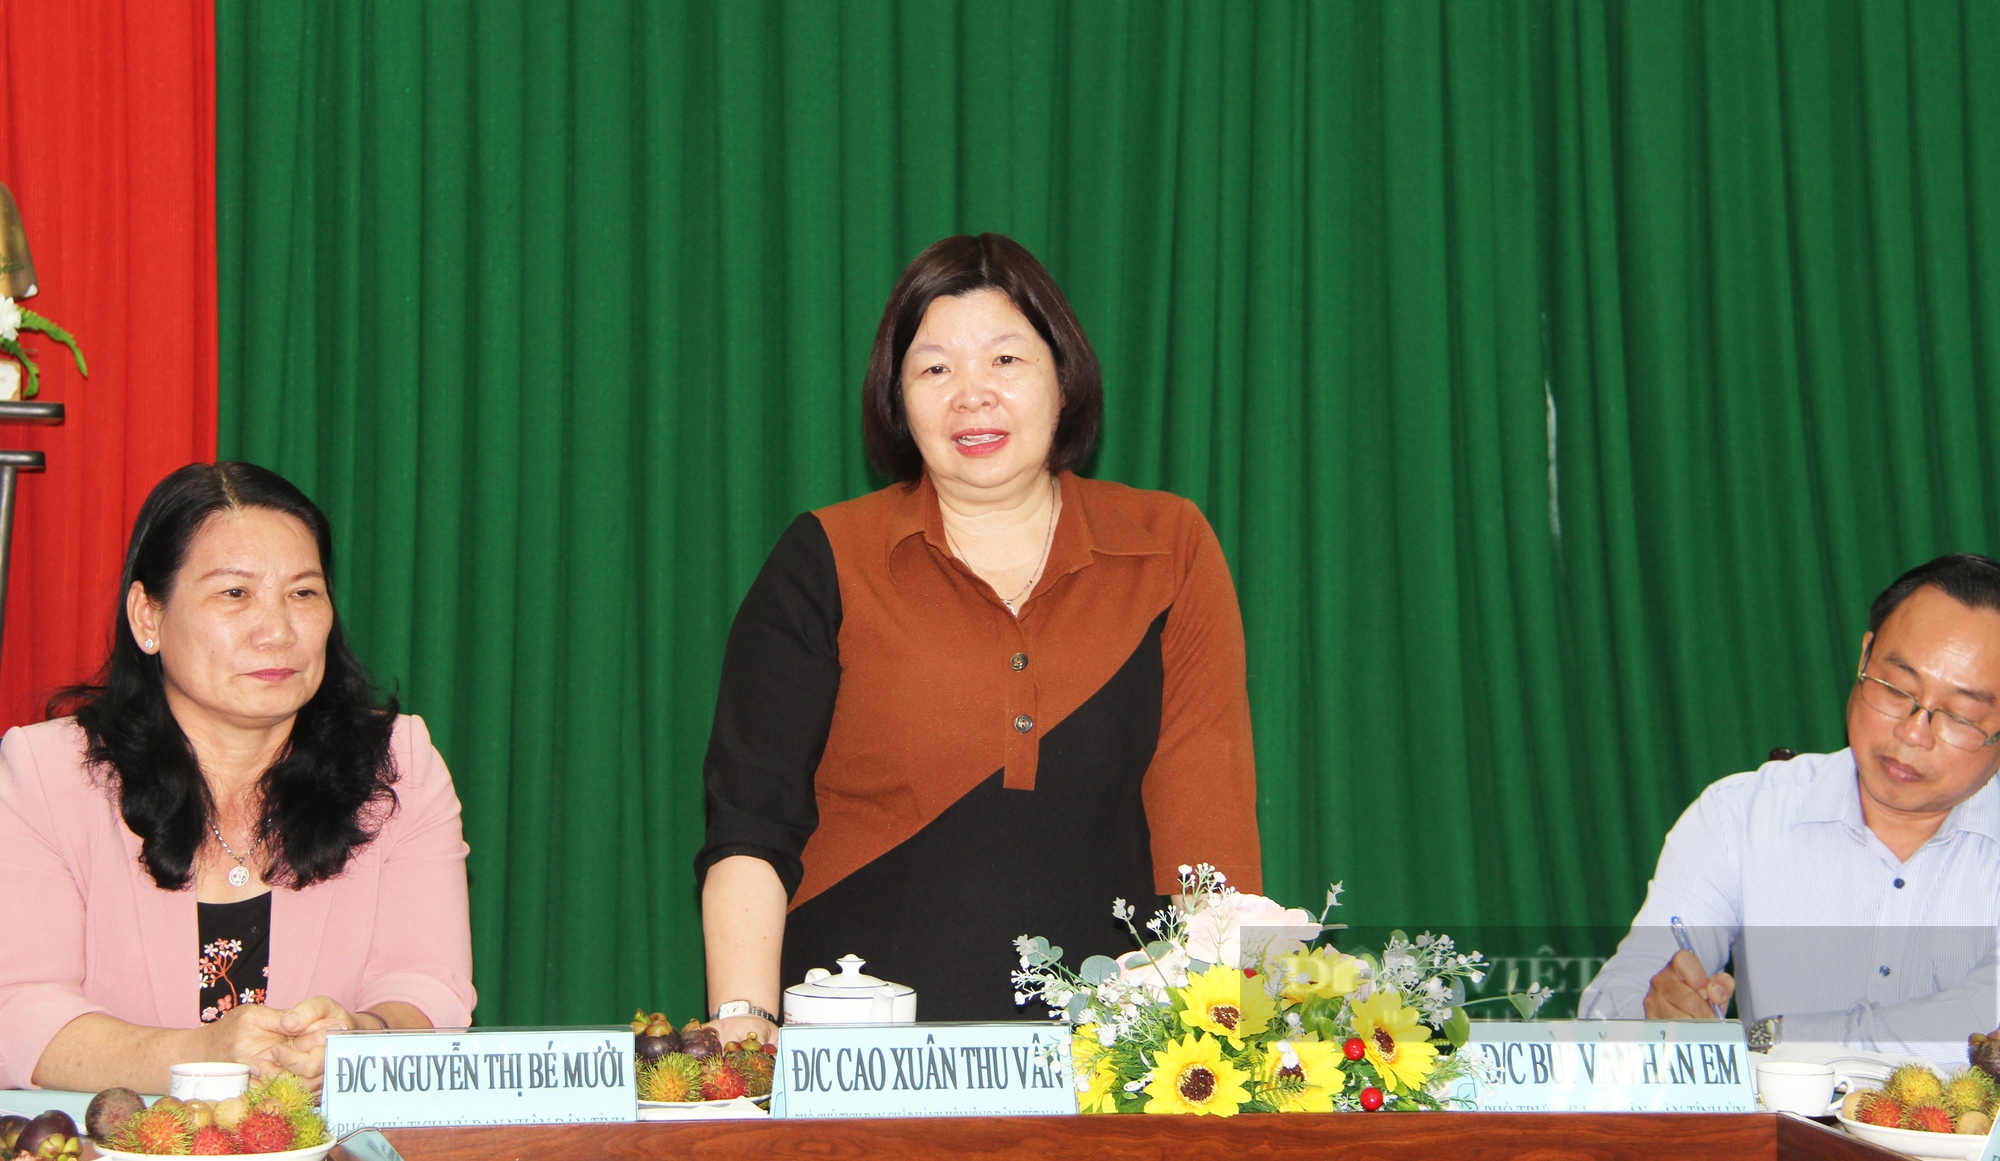 Phó Chủ tịch TƯ Hội NDVN Cao Xuân Thu Vân: Cần làm dự án lớn để giúp nông dân Bến Tre - Ảnh 2.